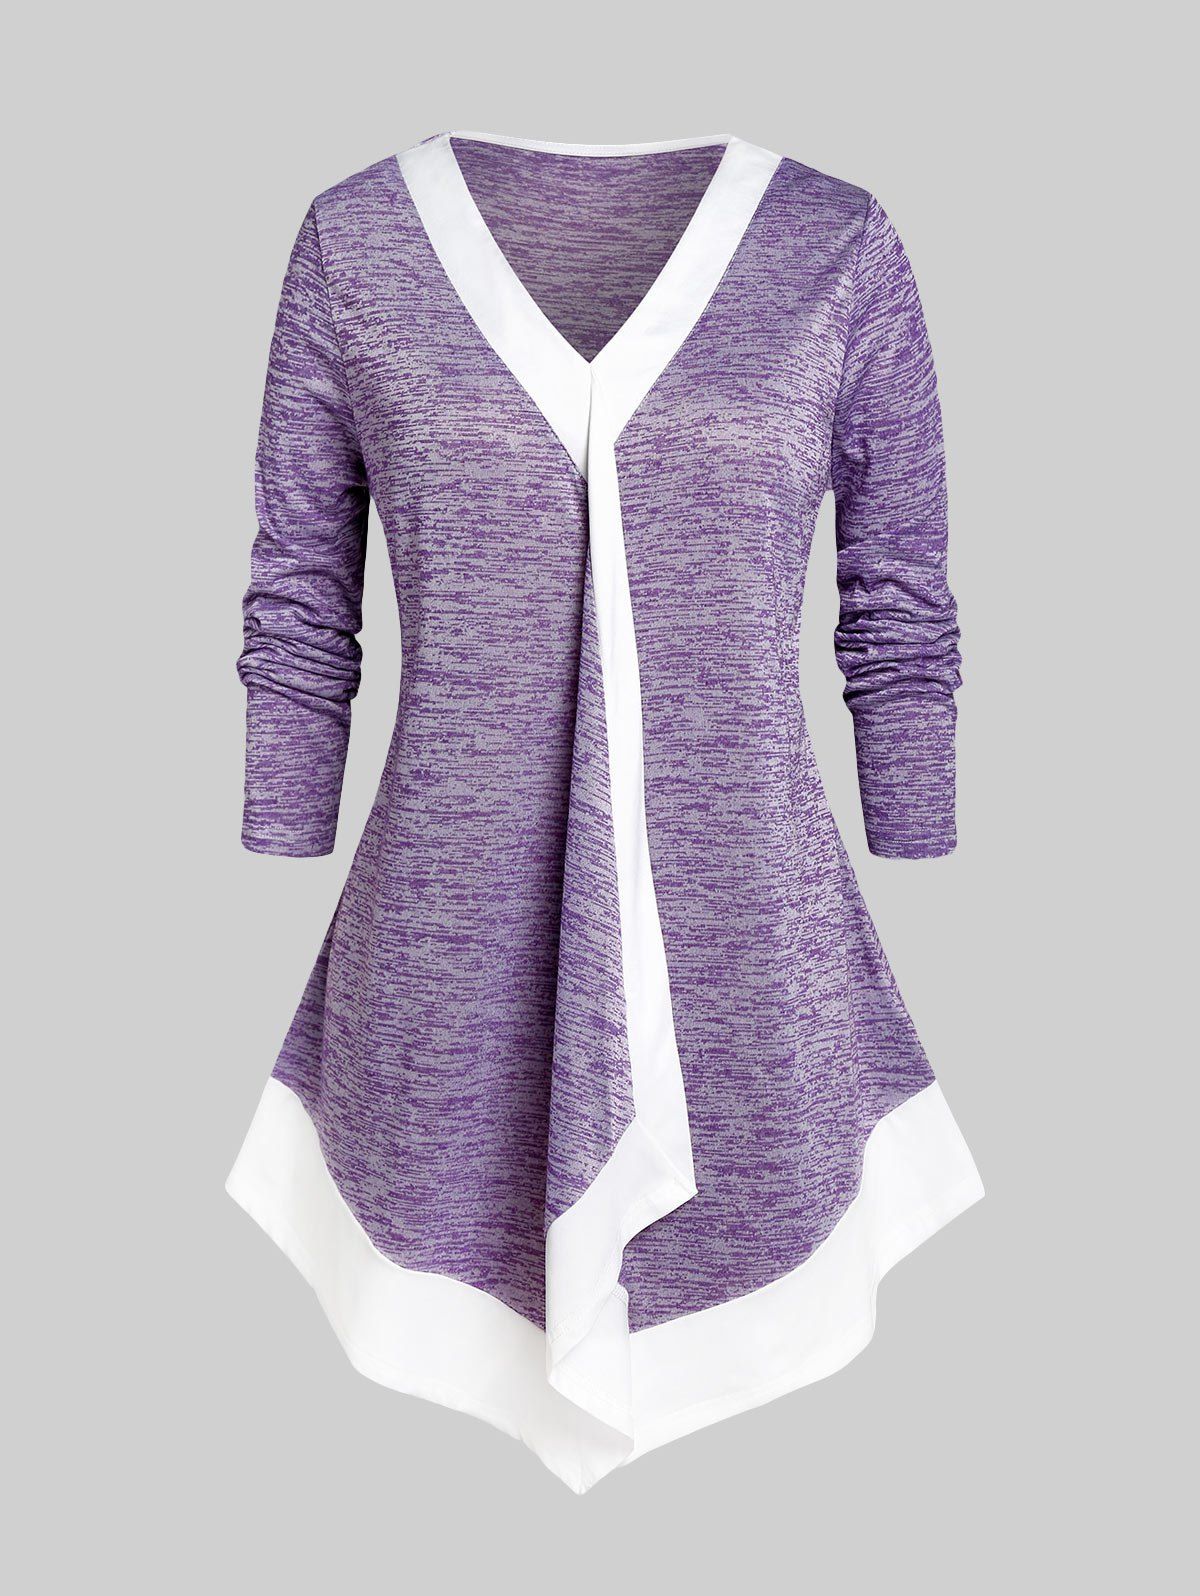 T-shirt Irrégulier Teinté de Grande Taille - Violet clair 1X